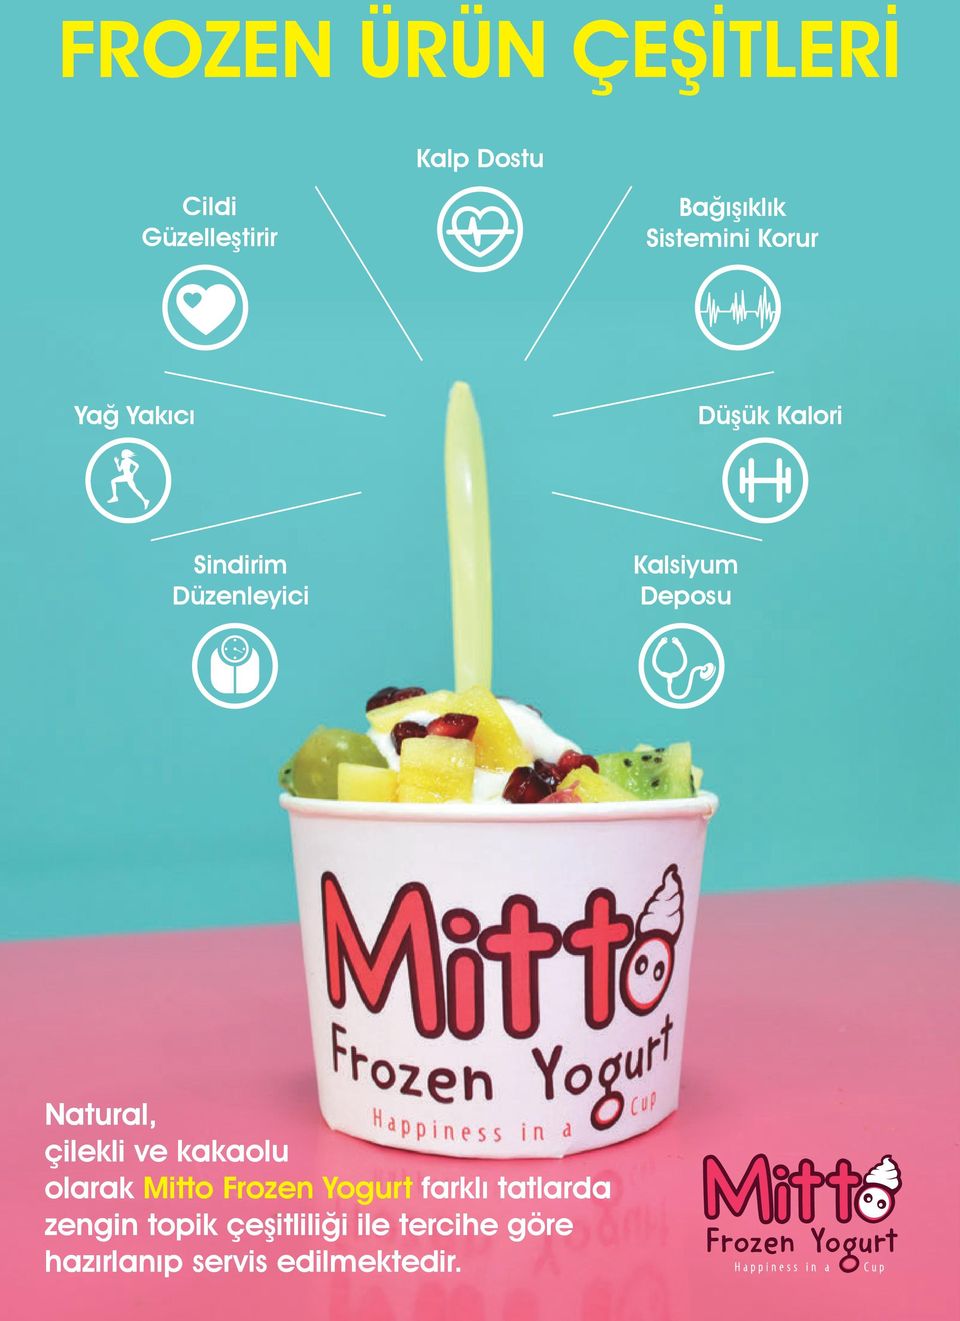 Deposu Natural, çilekli ve kakaolu olarak Mitto Frozen Yogurt farklı